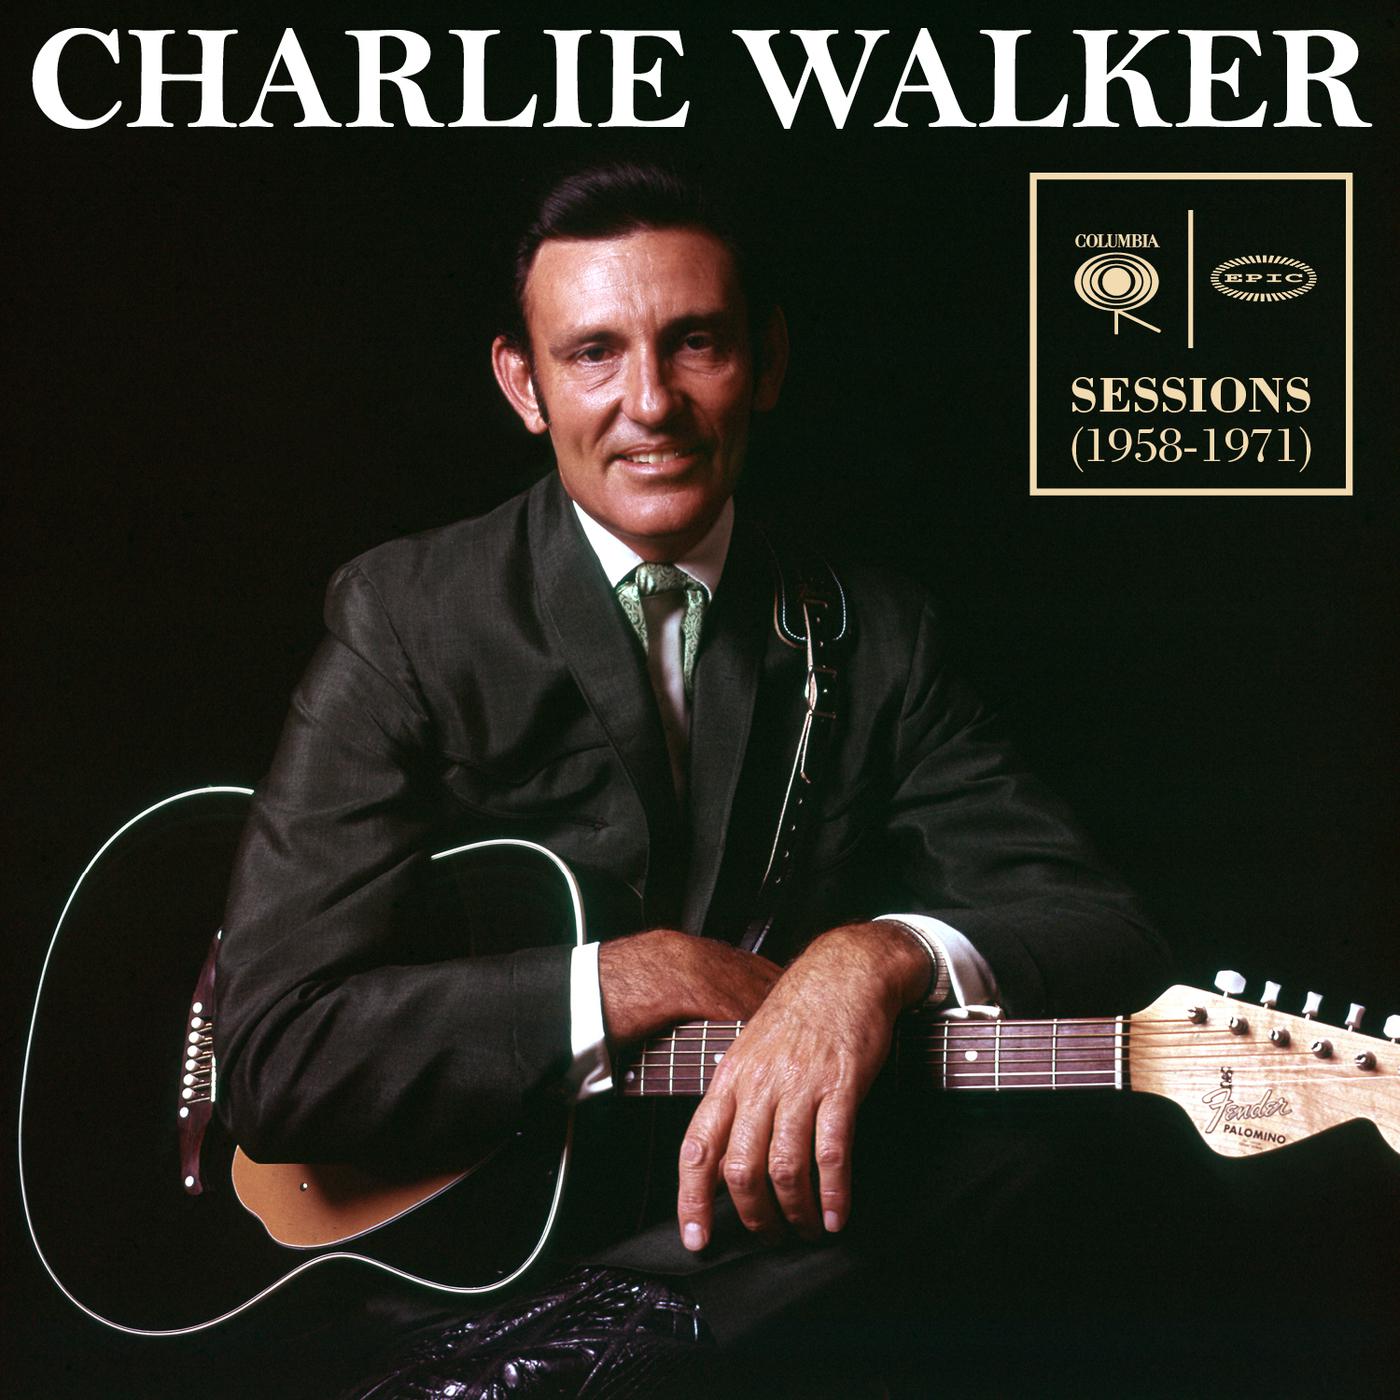 Charlie Walker - I'm Ashamed of You